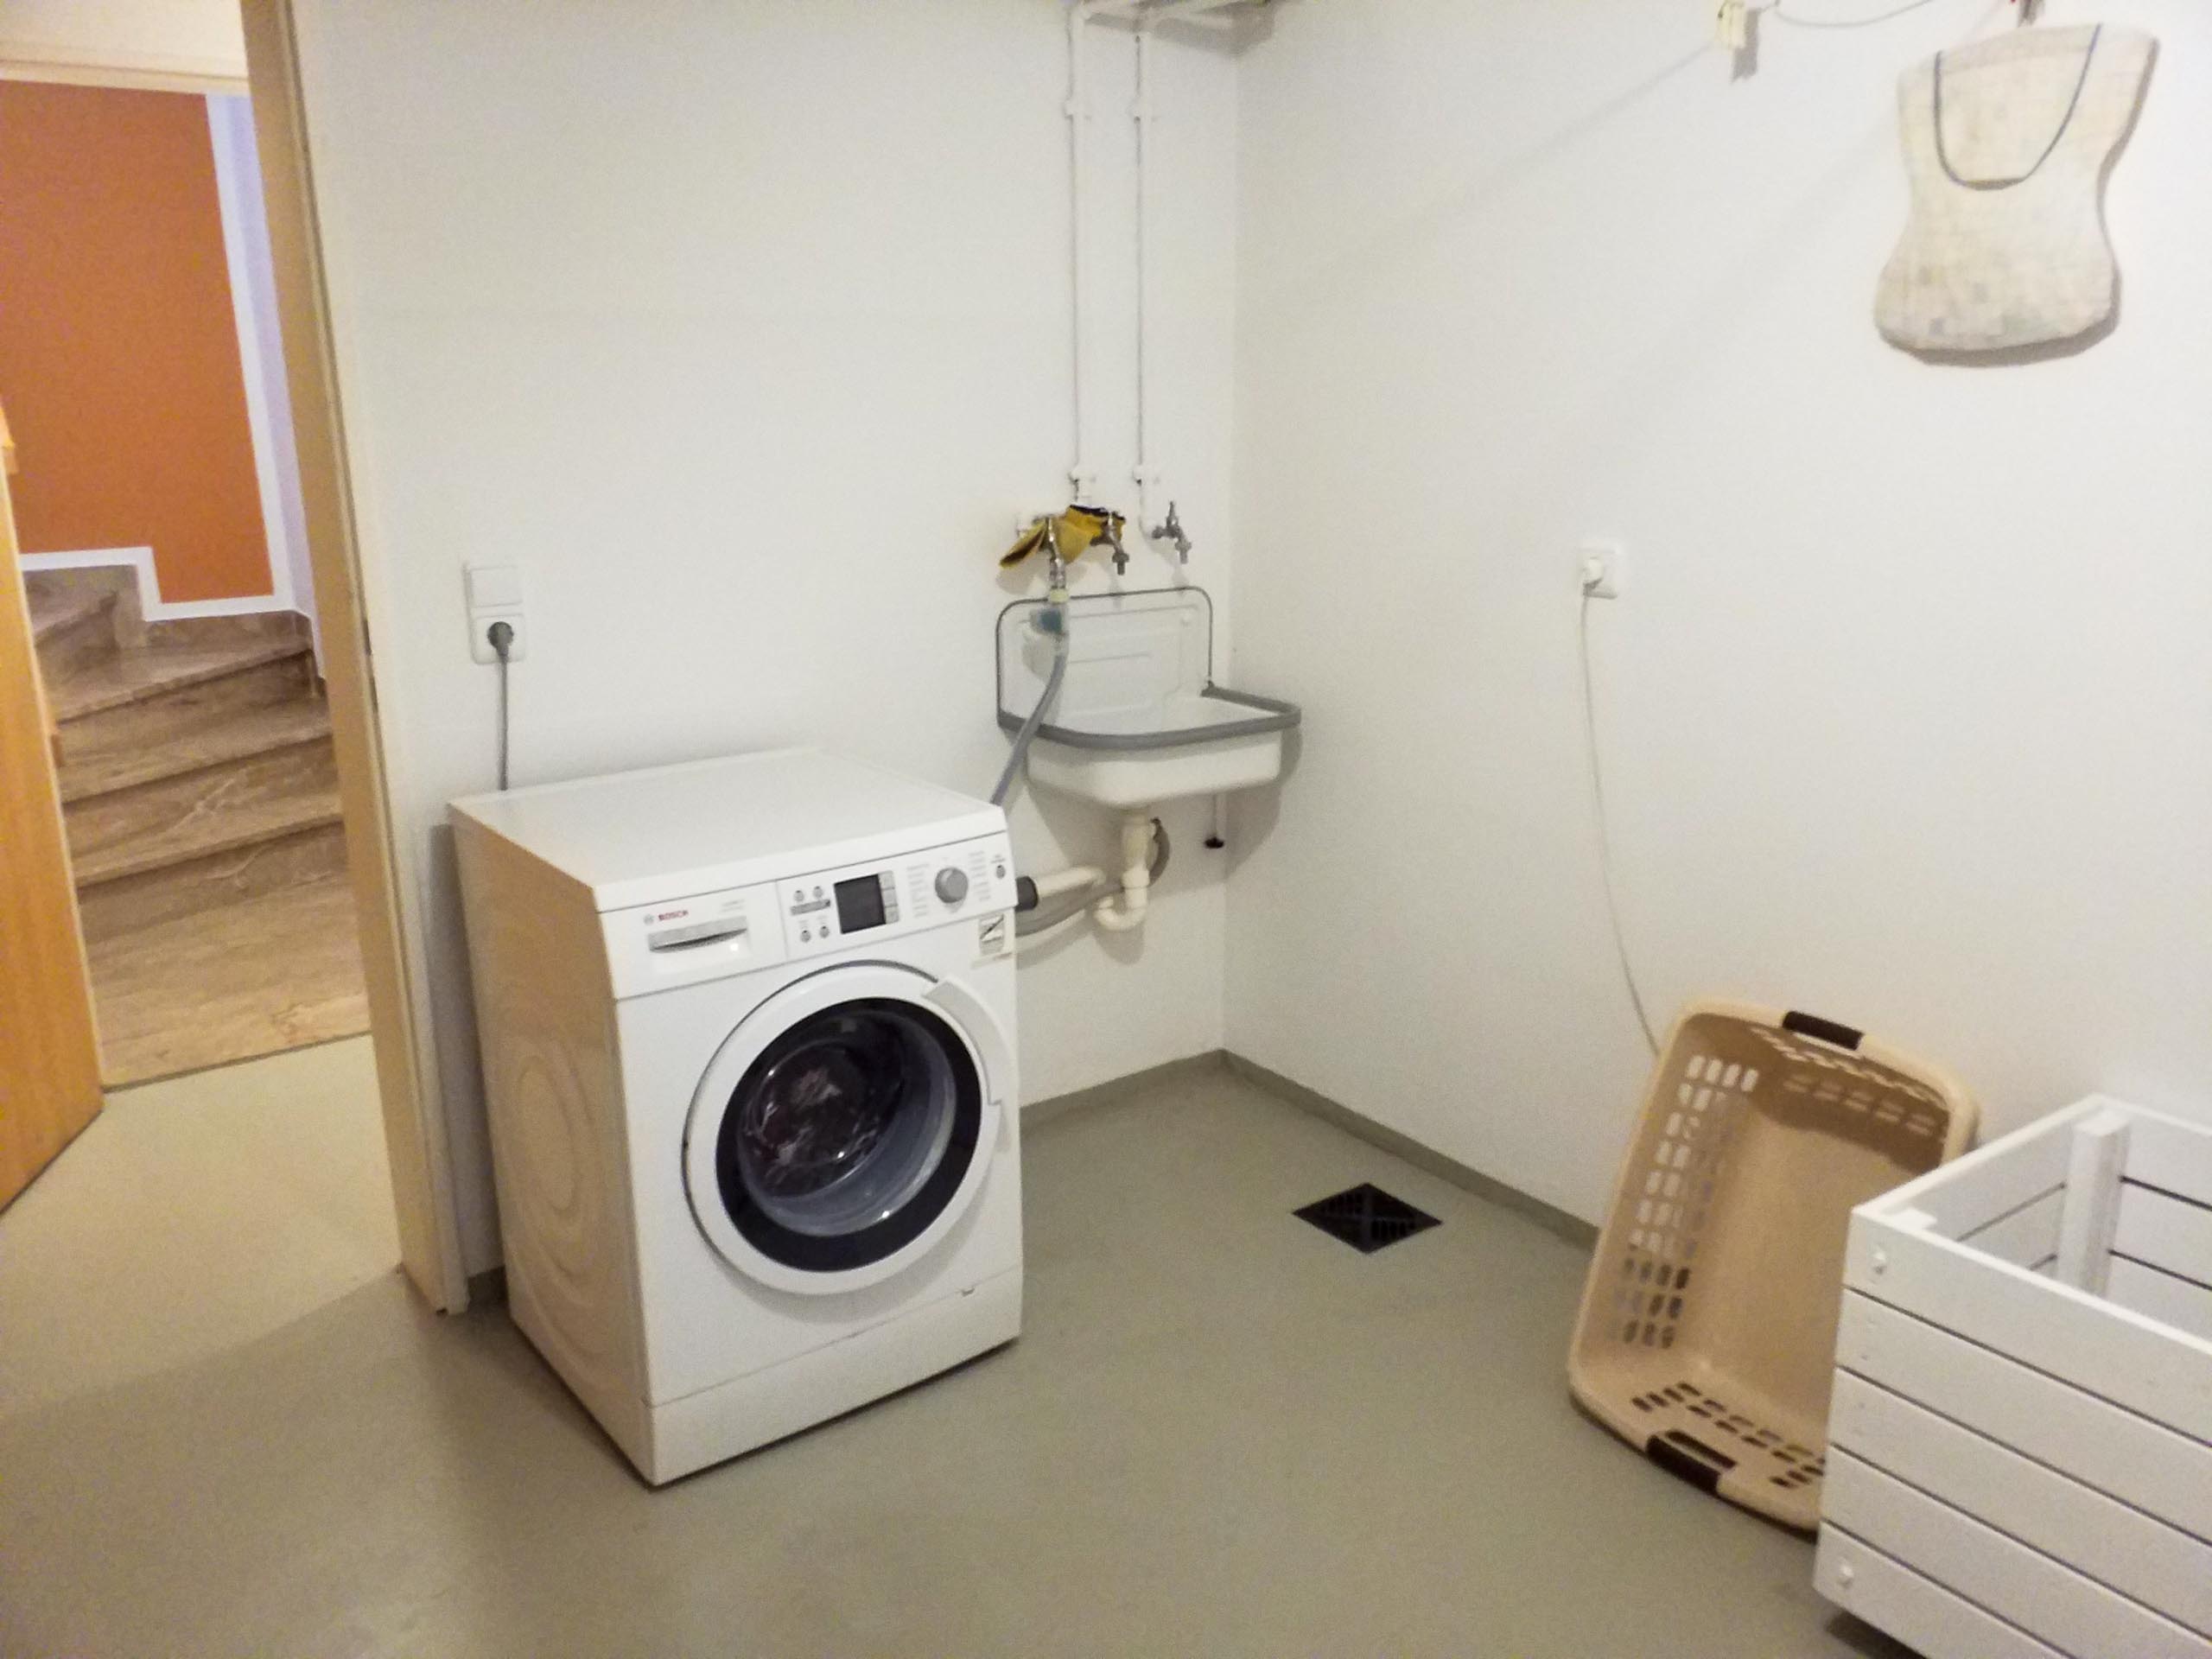 HA 2020 1 laundry room 003